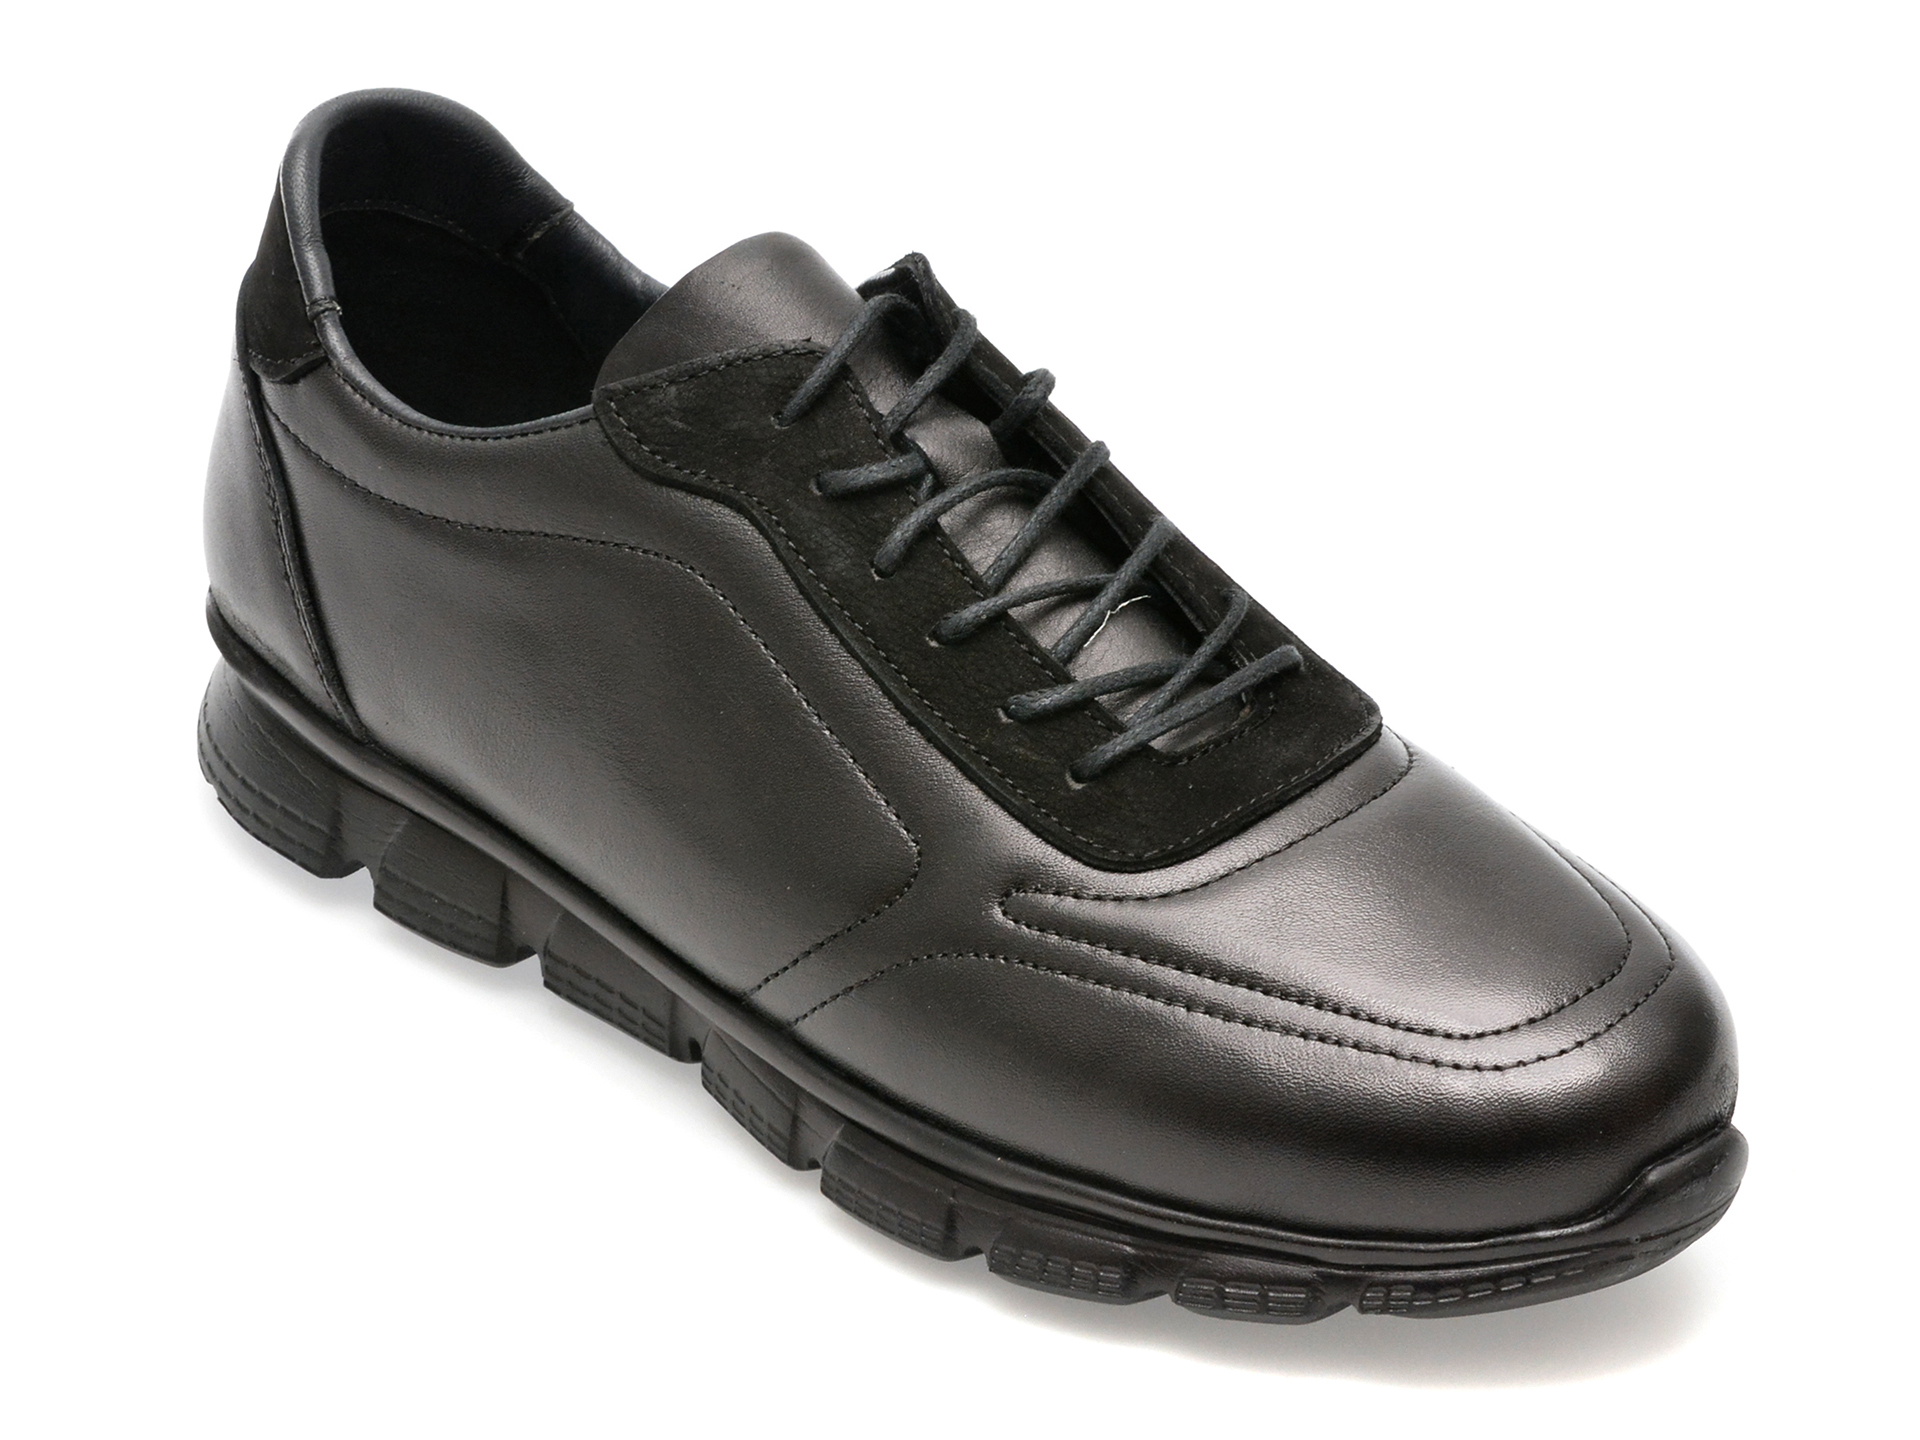 Pantofi AXXELLL negri, NY202, din piele naturala /barbati/pantofi